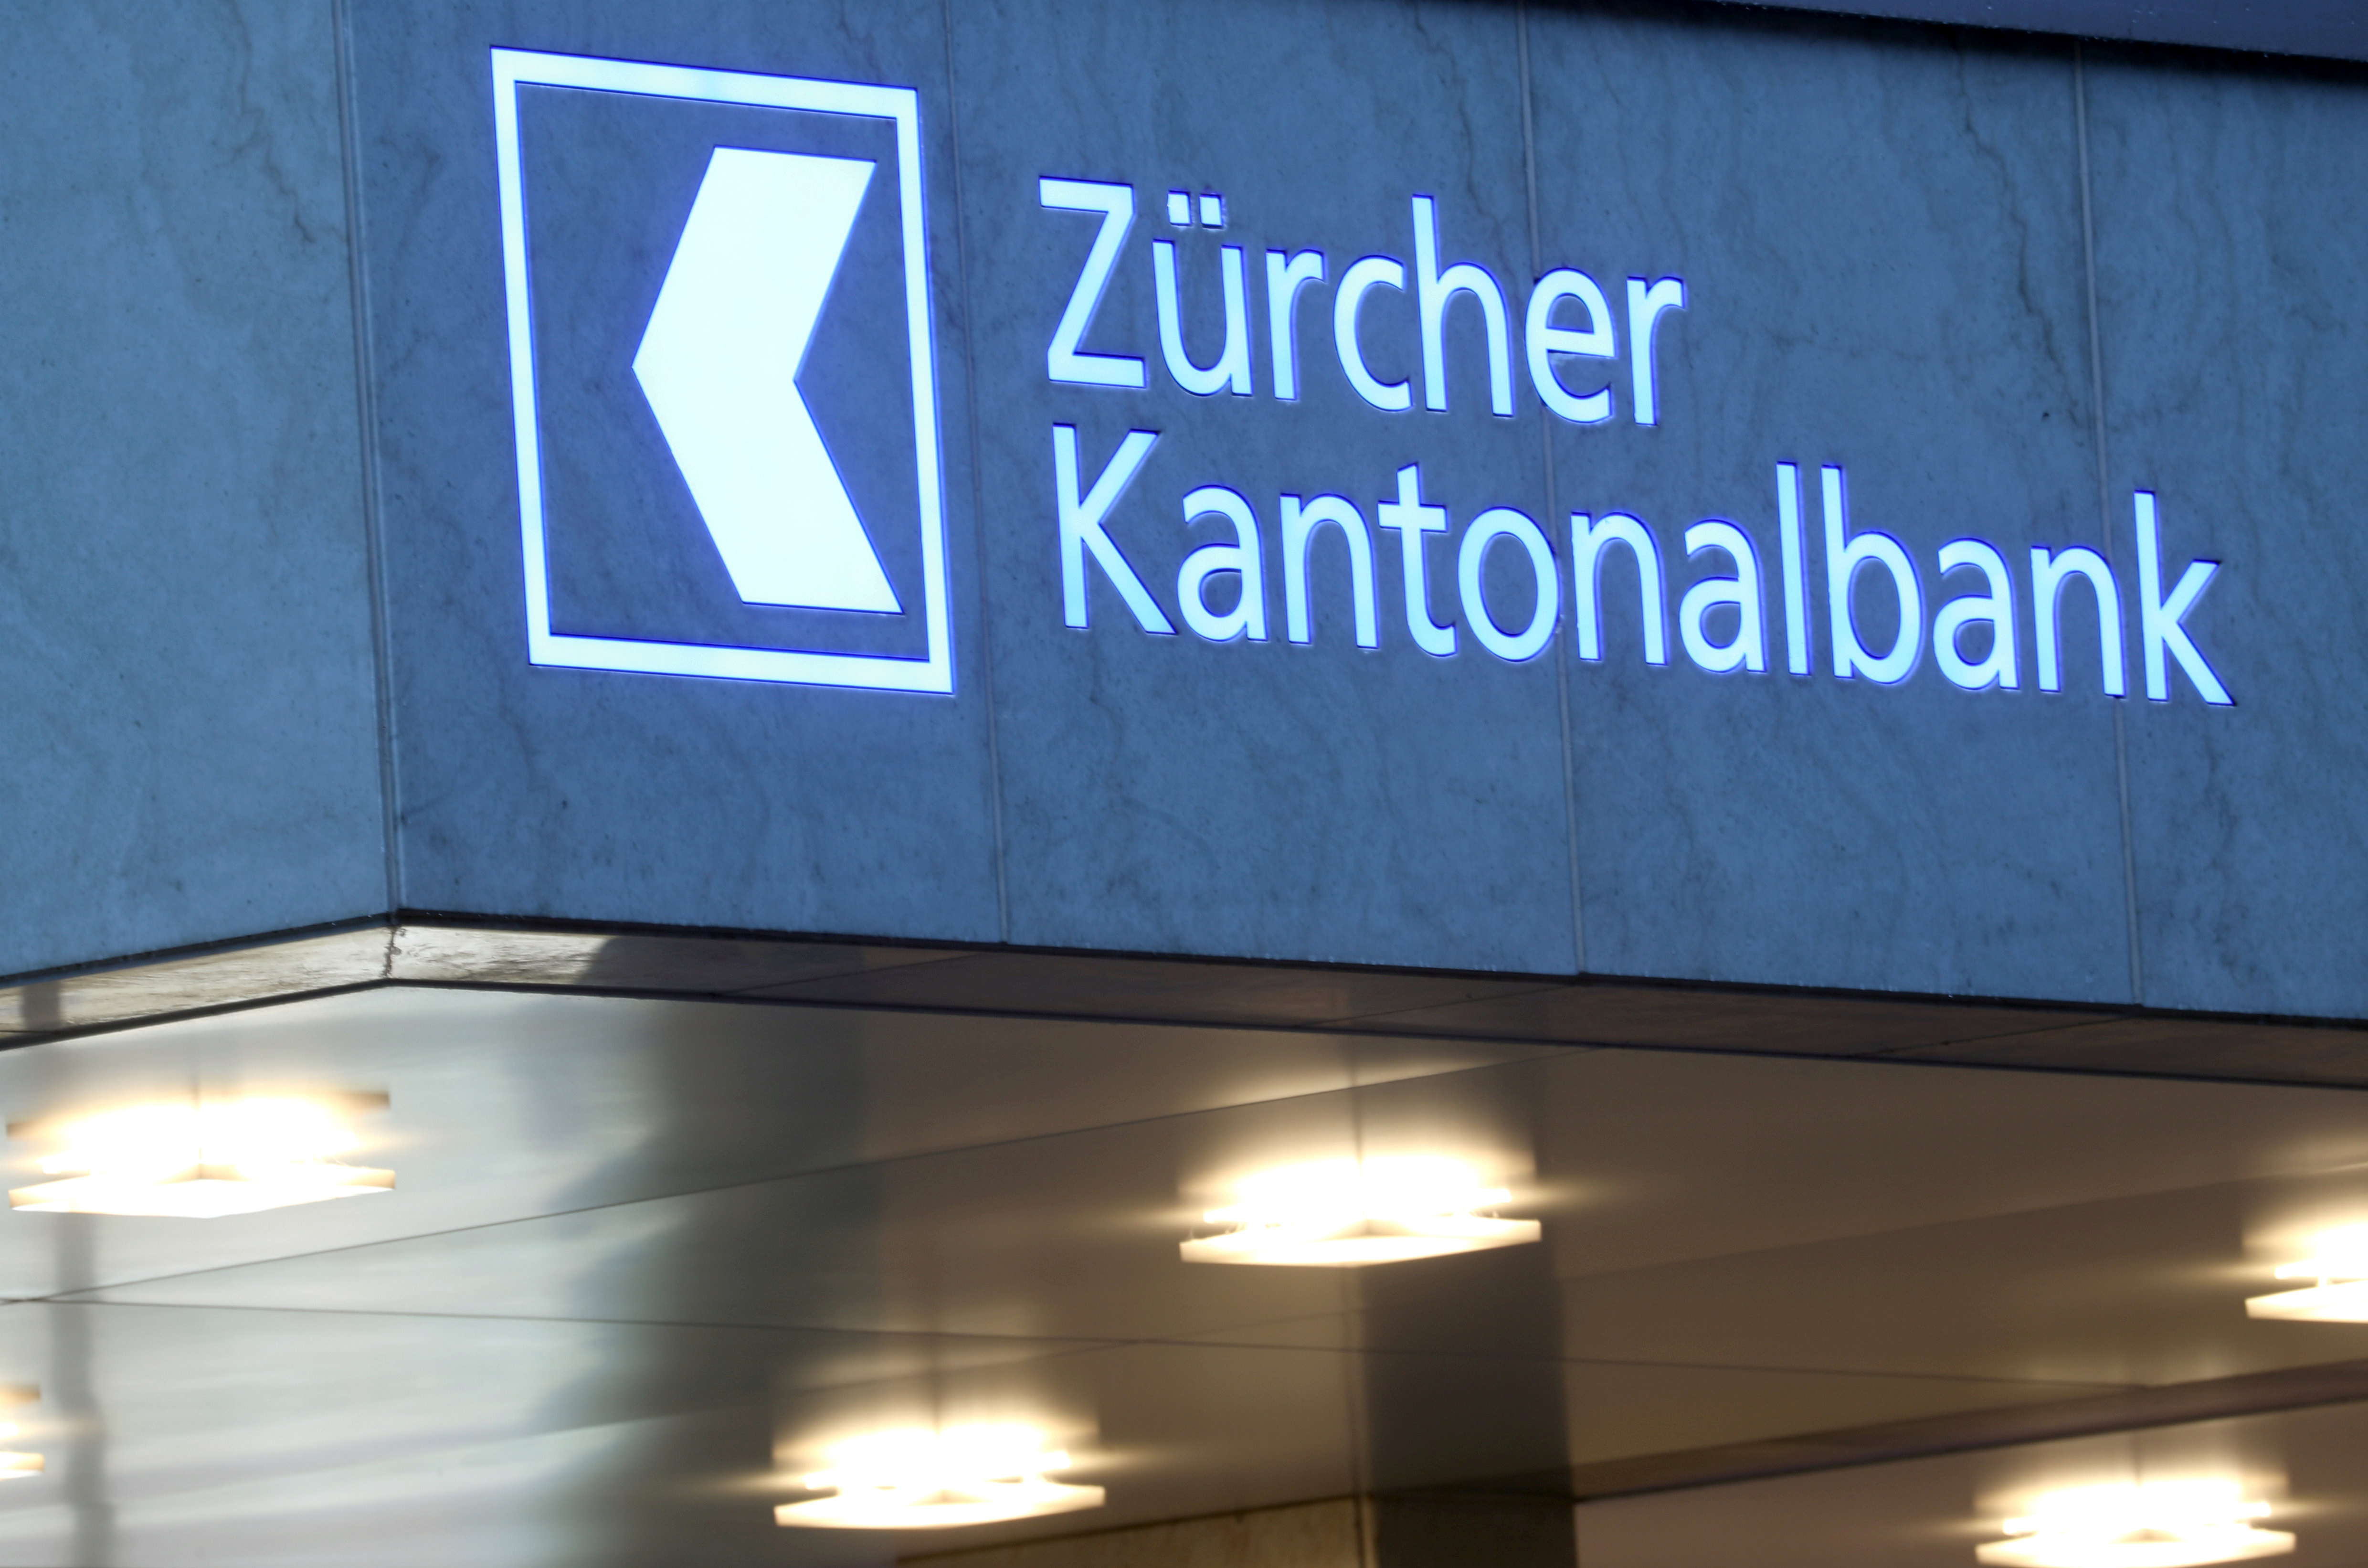 Logo of Zuercher Kantonalbank bank is seen in Zurich